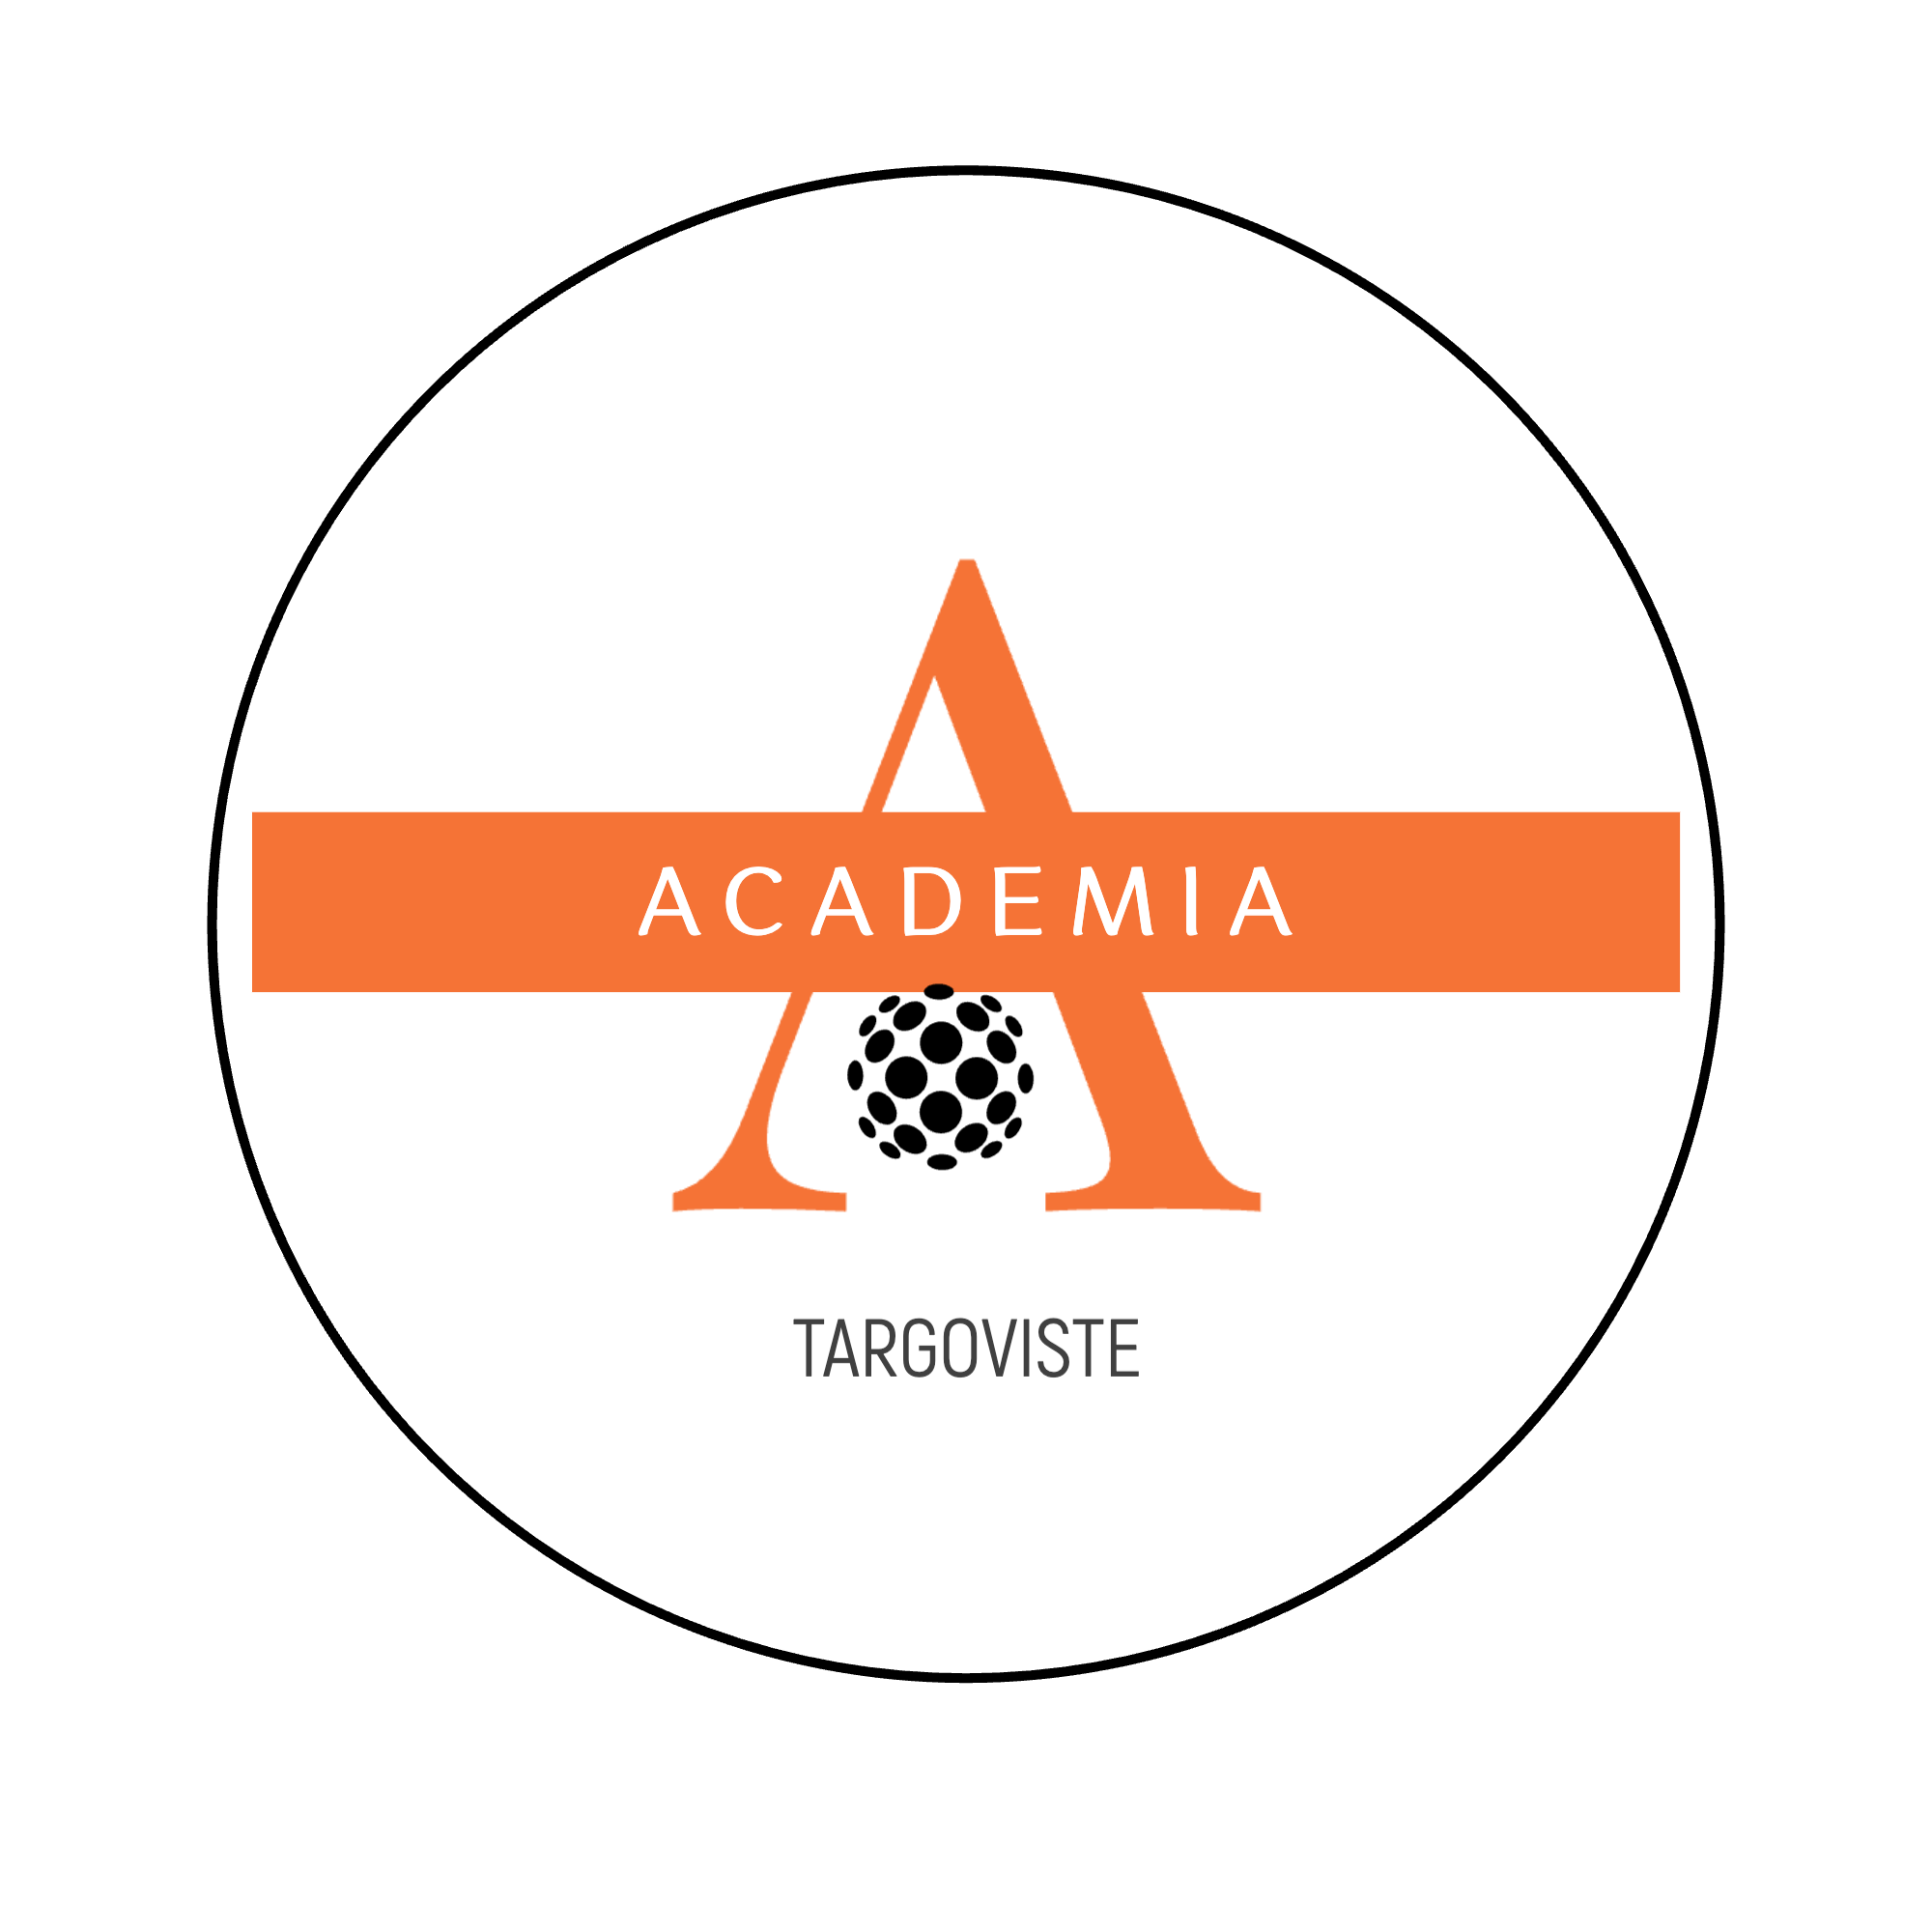 Acs Academia Targoviste